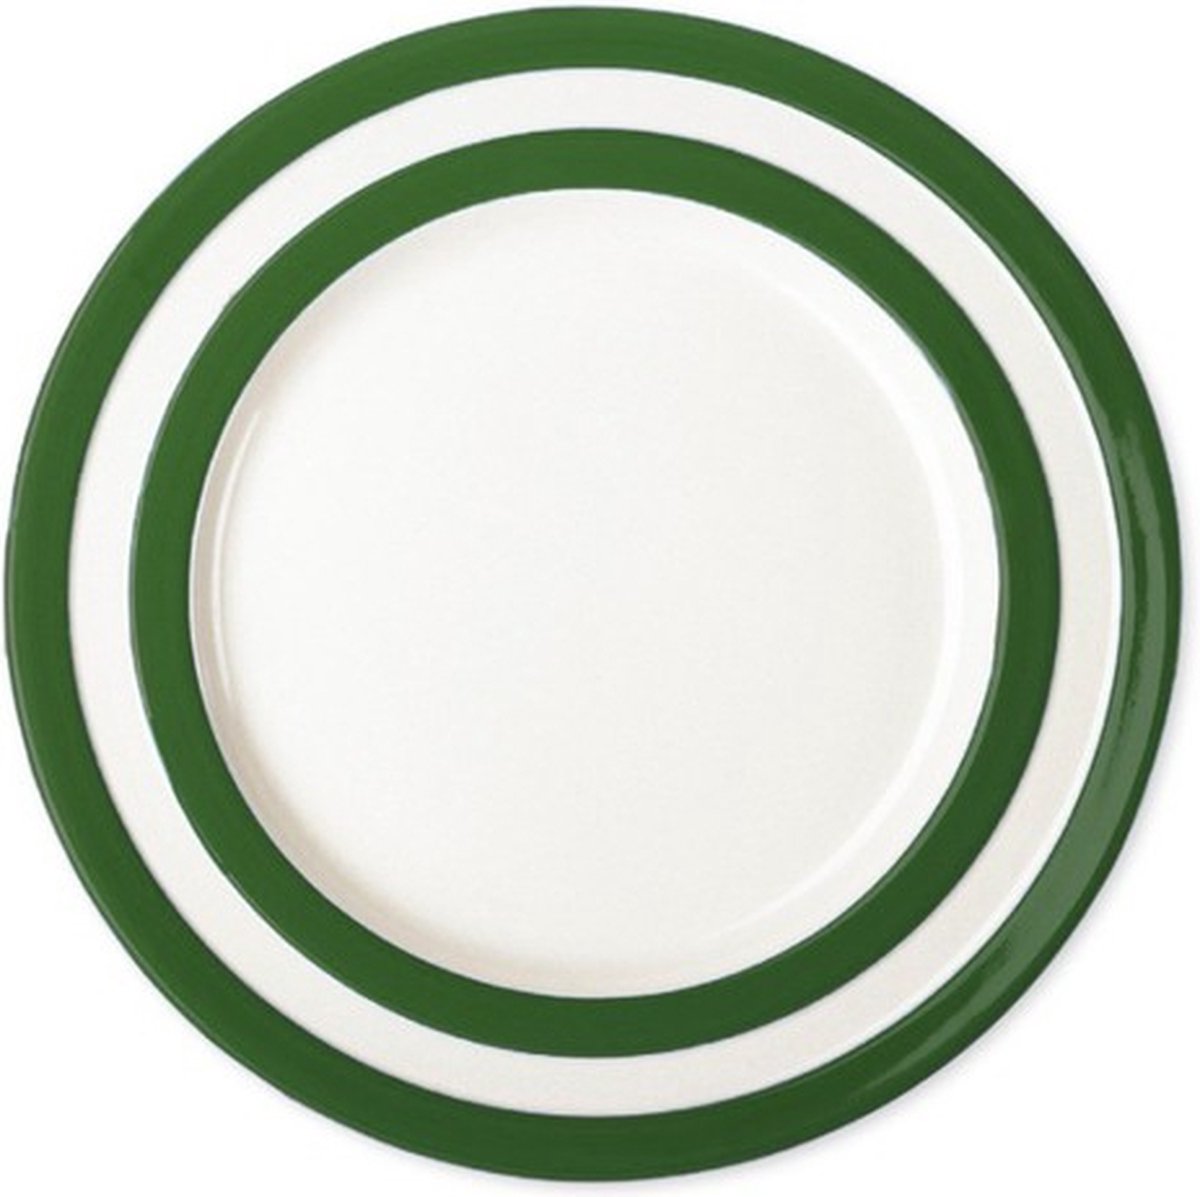 Cornishware Adder Green Breakfast Plate - ontbijtbord 23 cm - donkergroene strepen - handbeschilderd